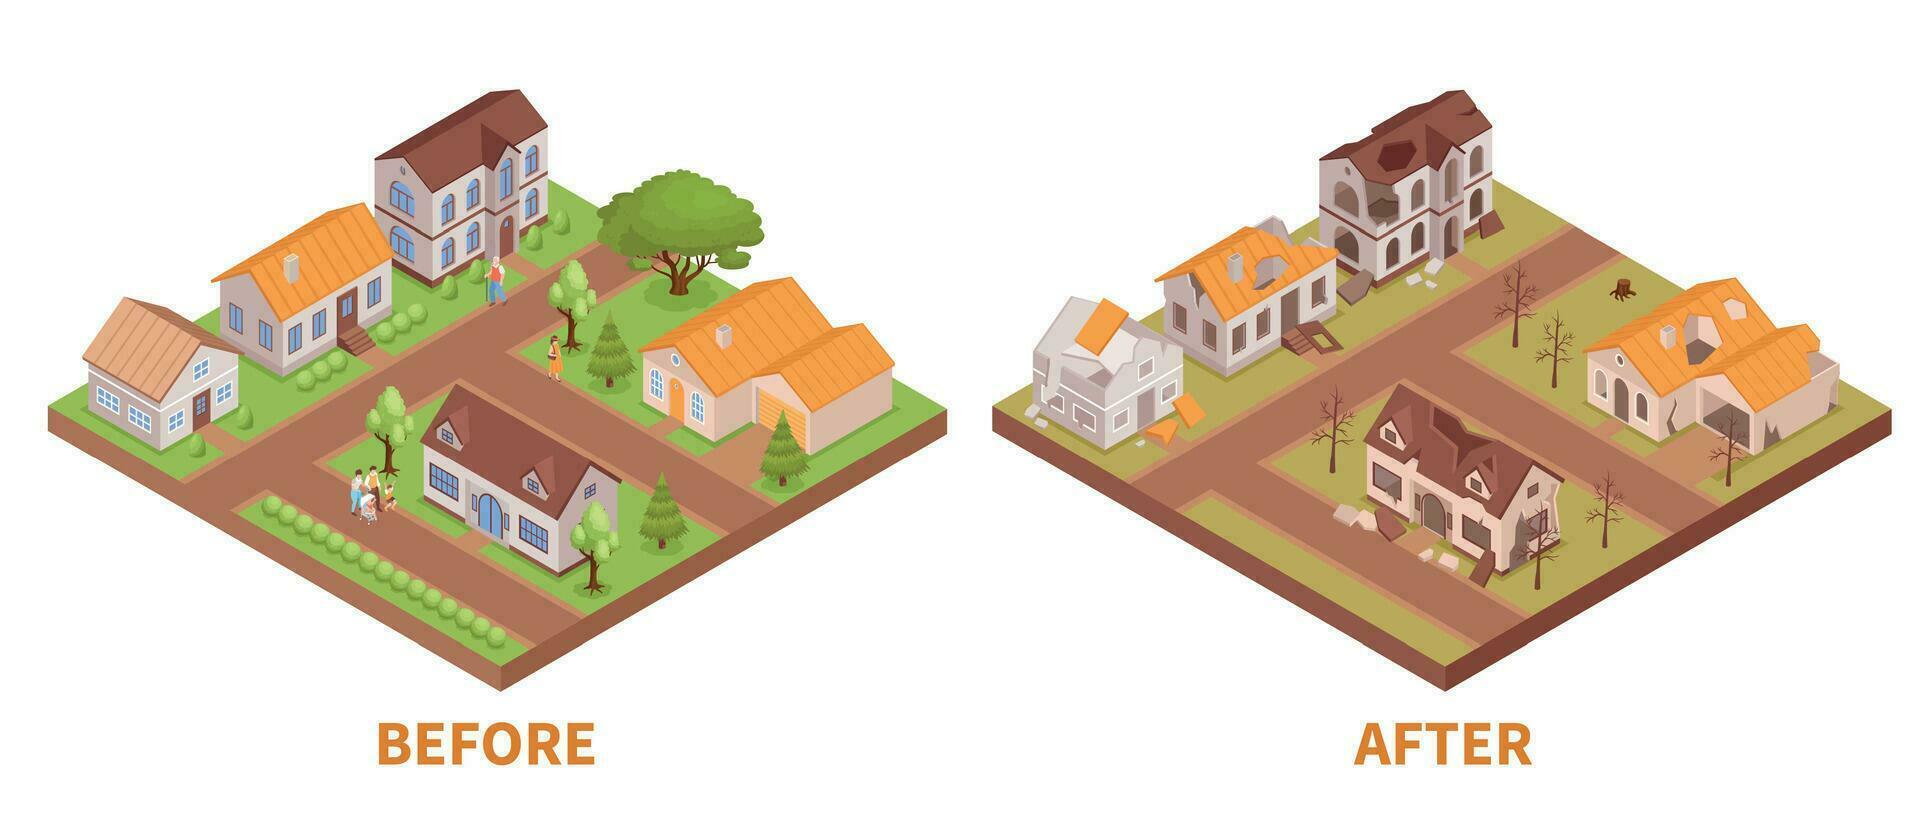 byggnader innan och efter katastrof vektor